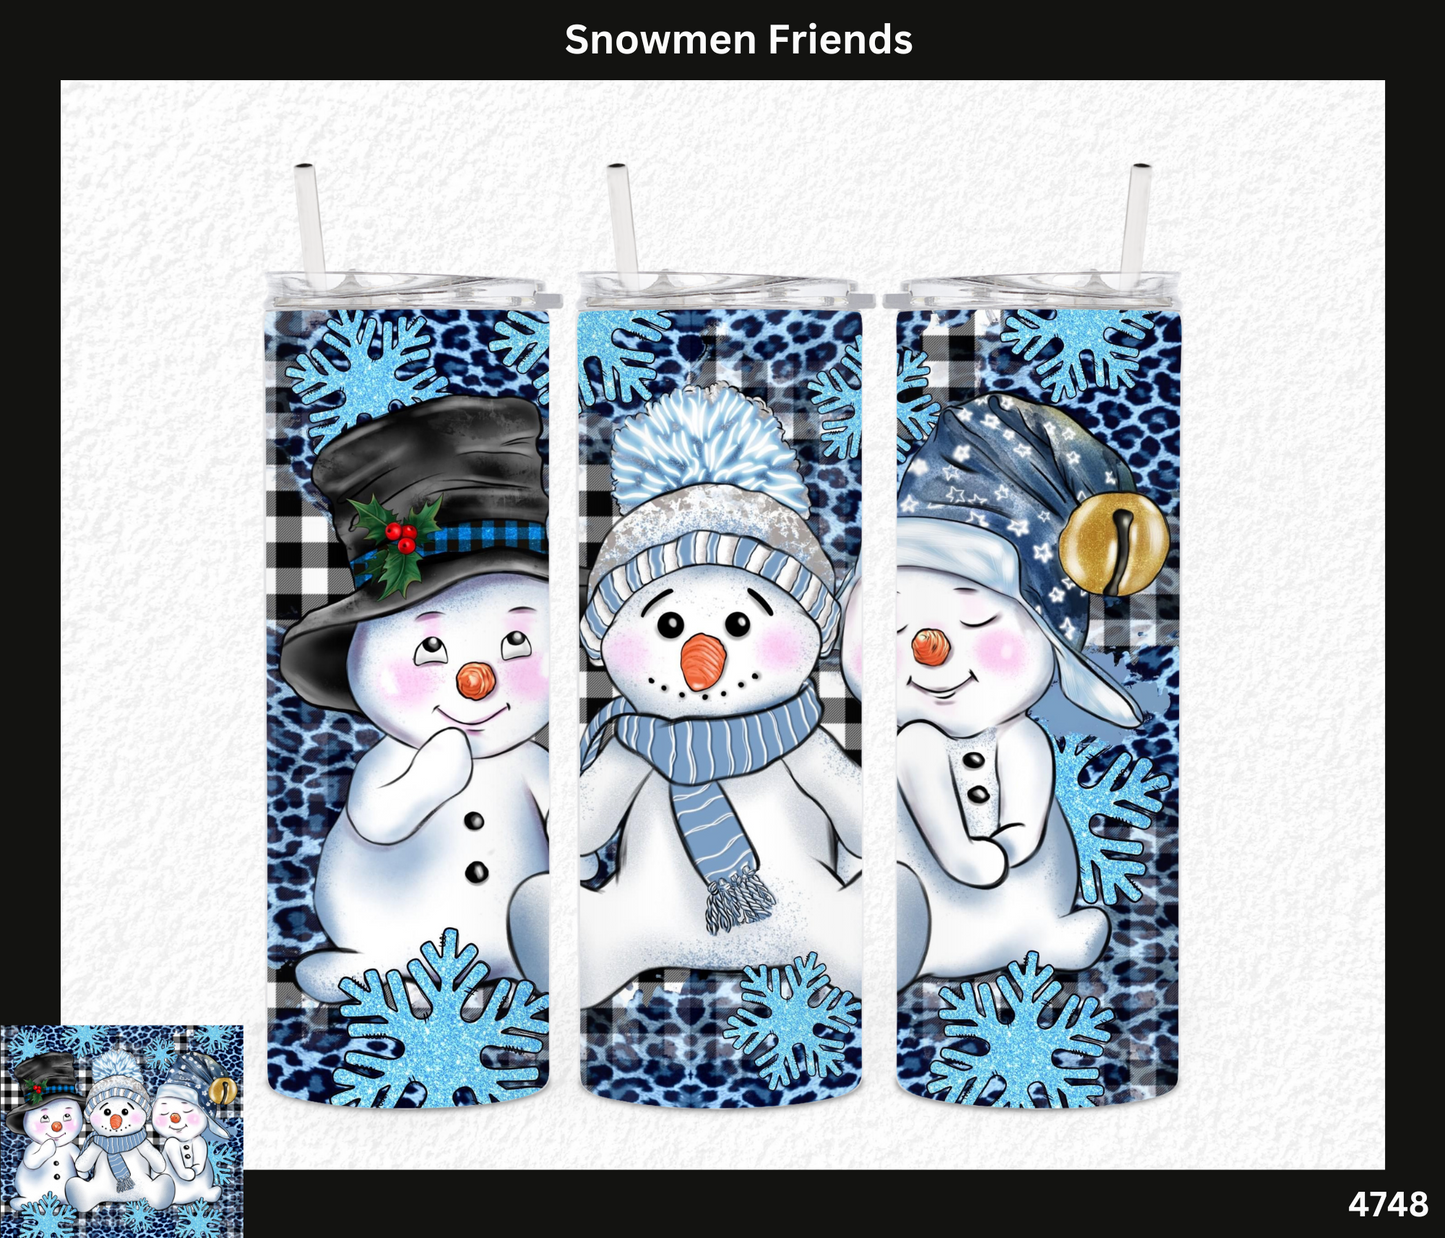 Snowman Friends